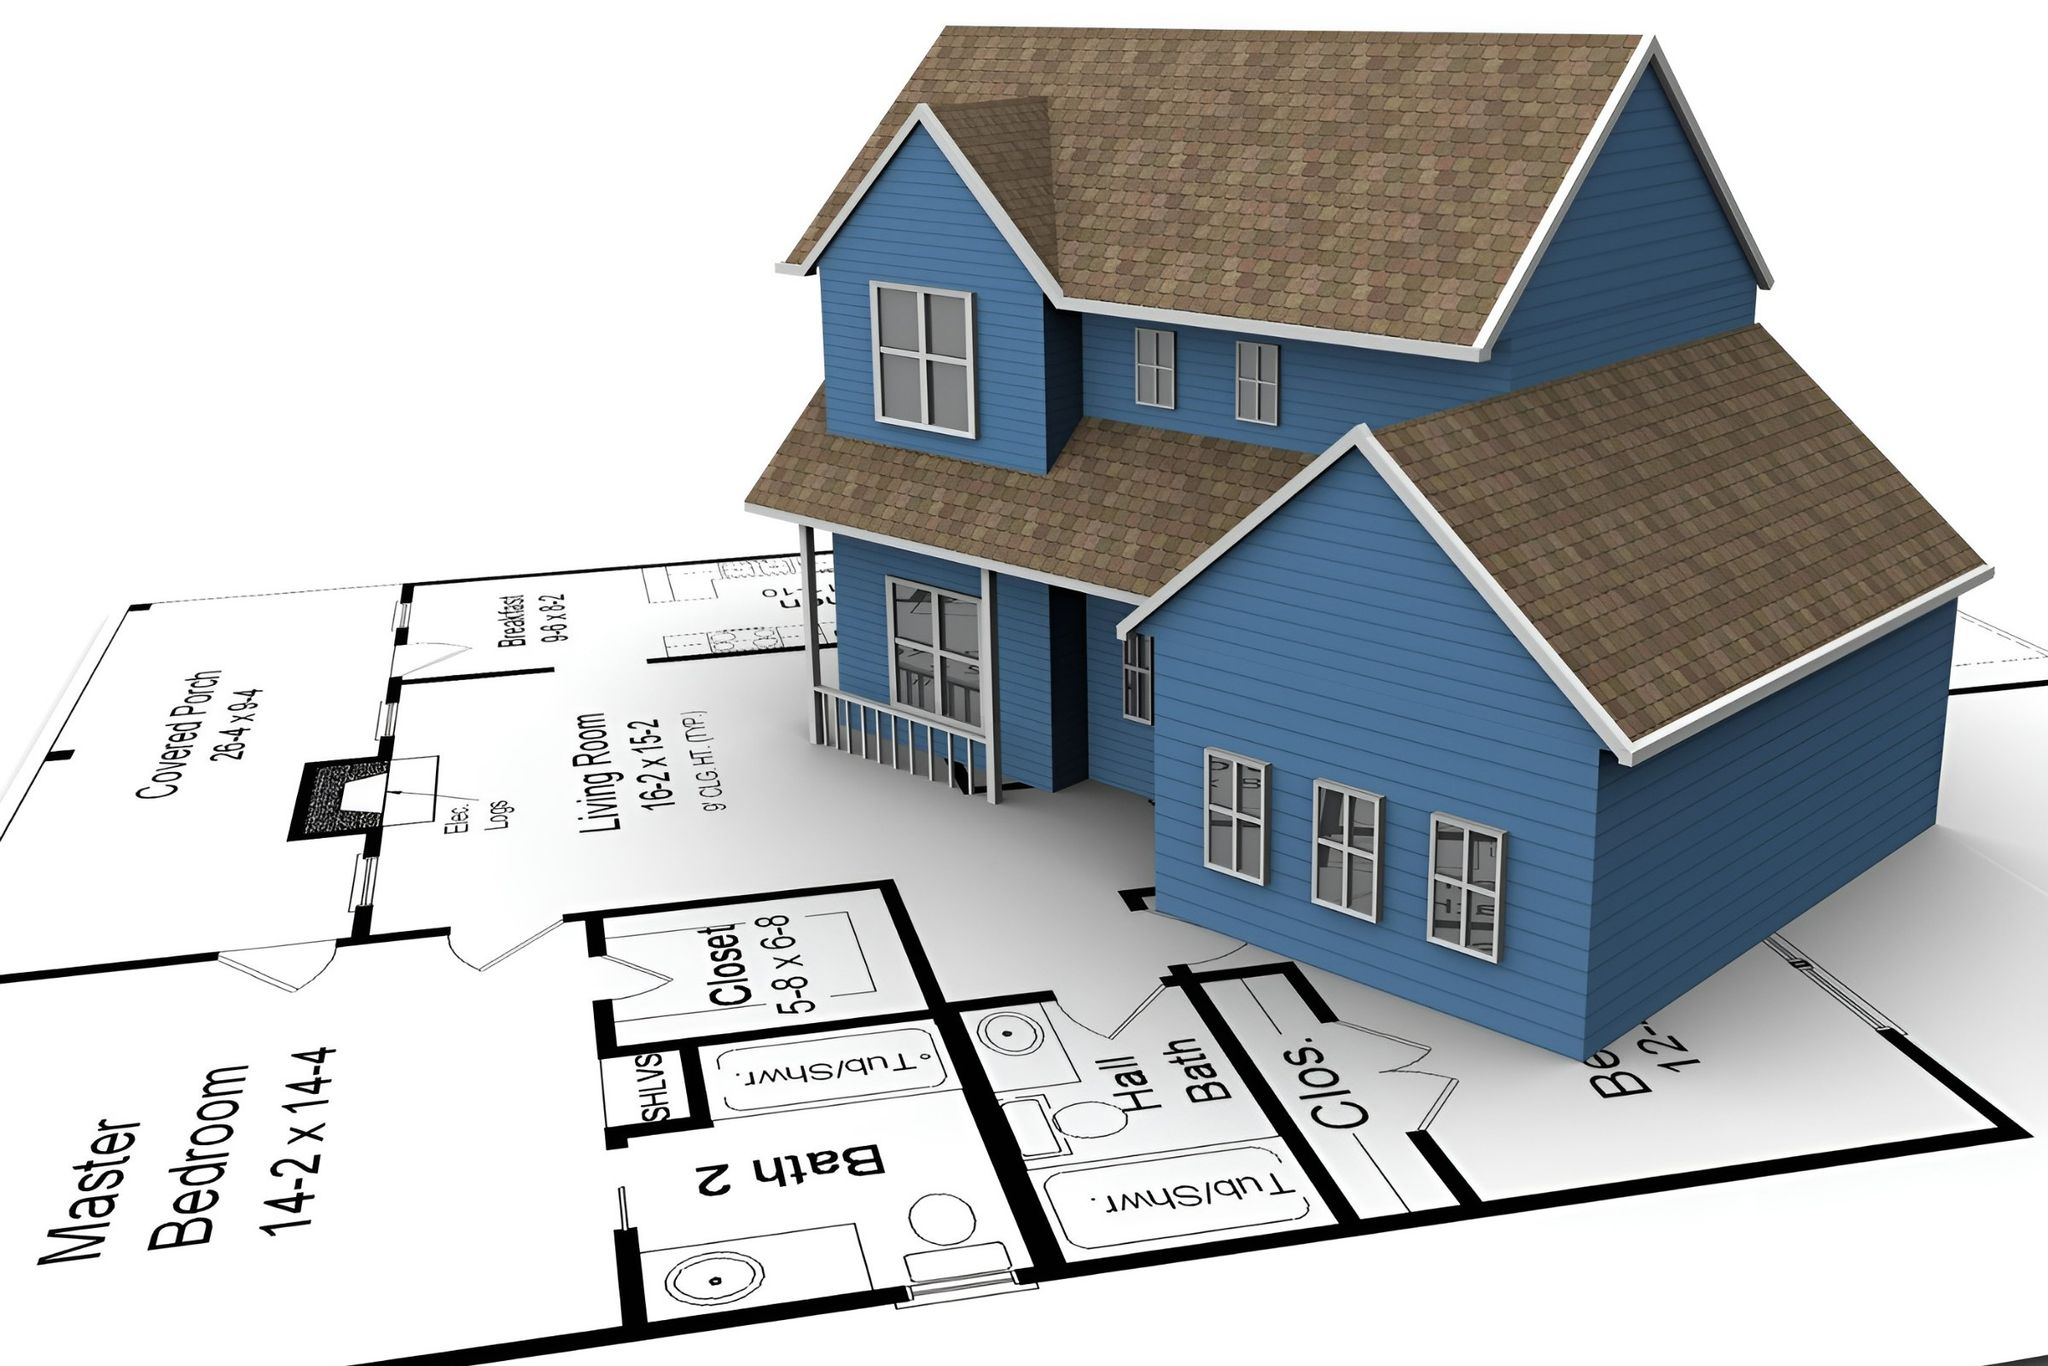 Diện tích sàn là một thông số quan trọng trong xây dựng và thiết kế nhà ở